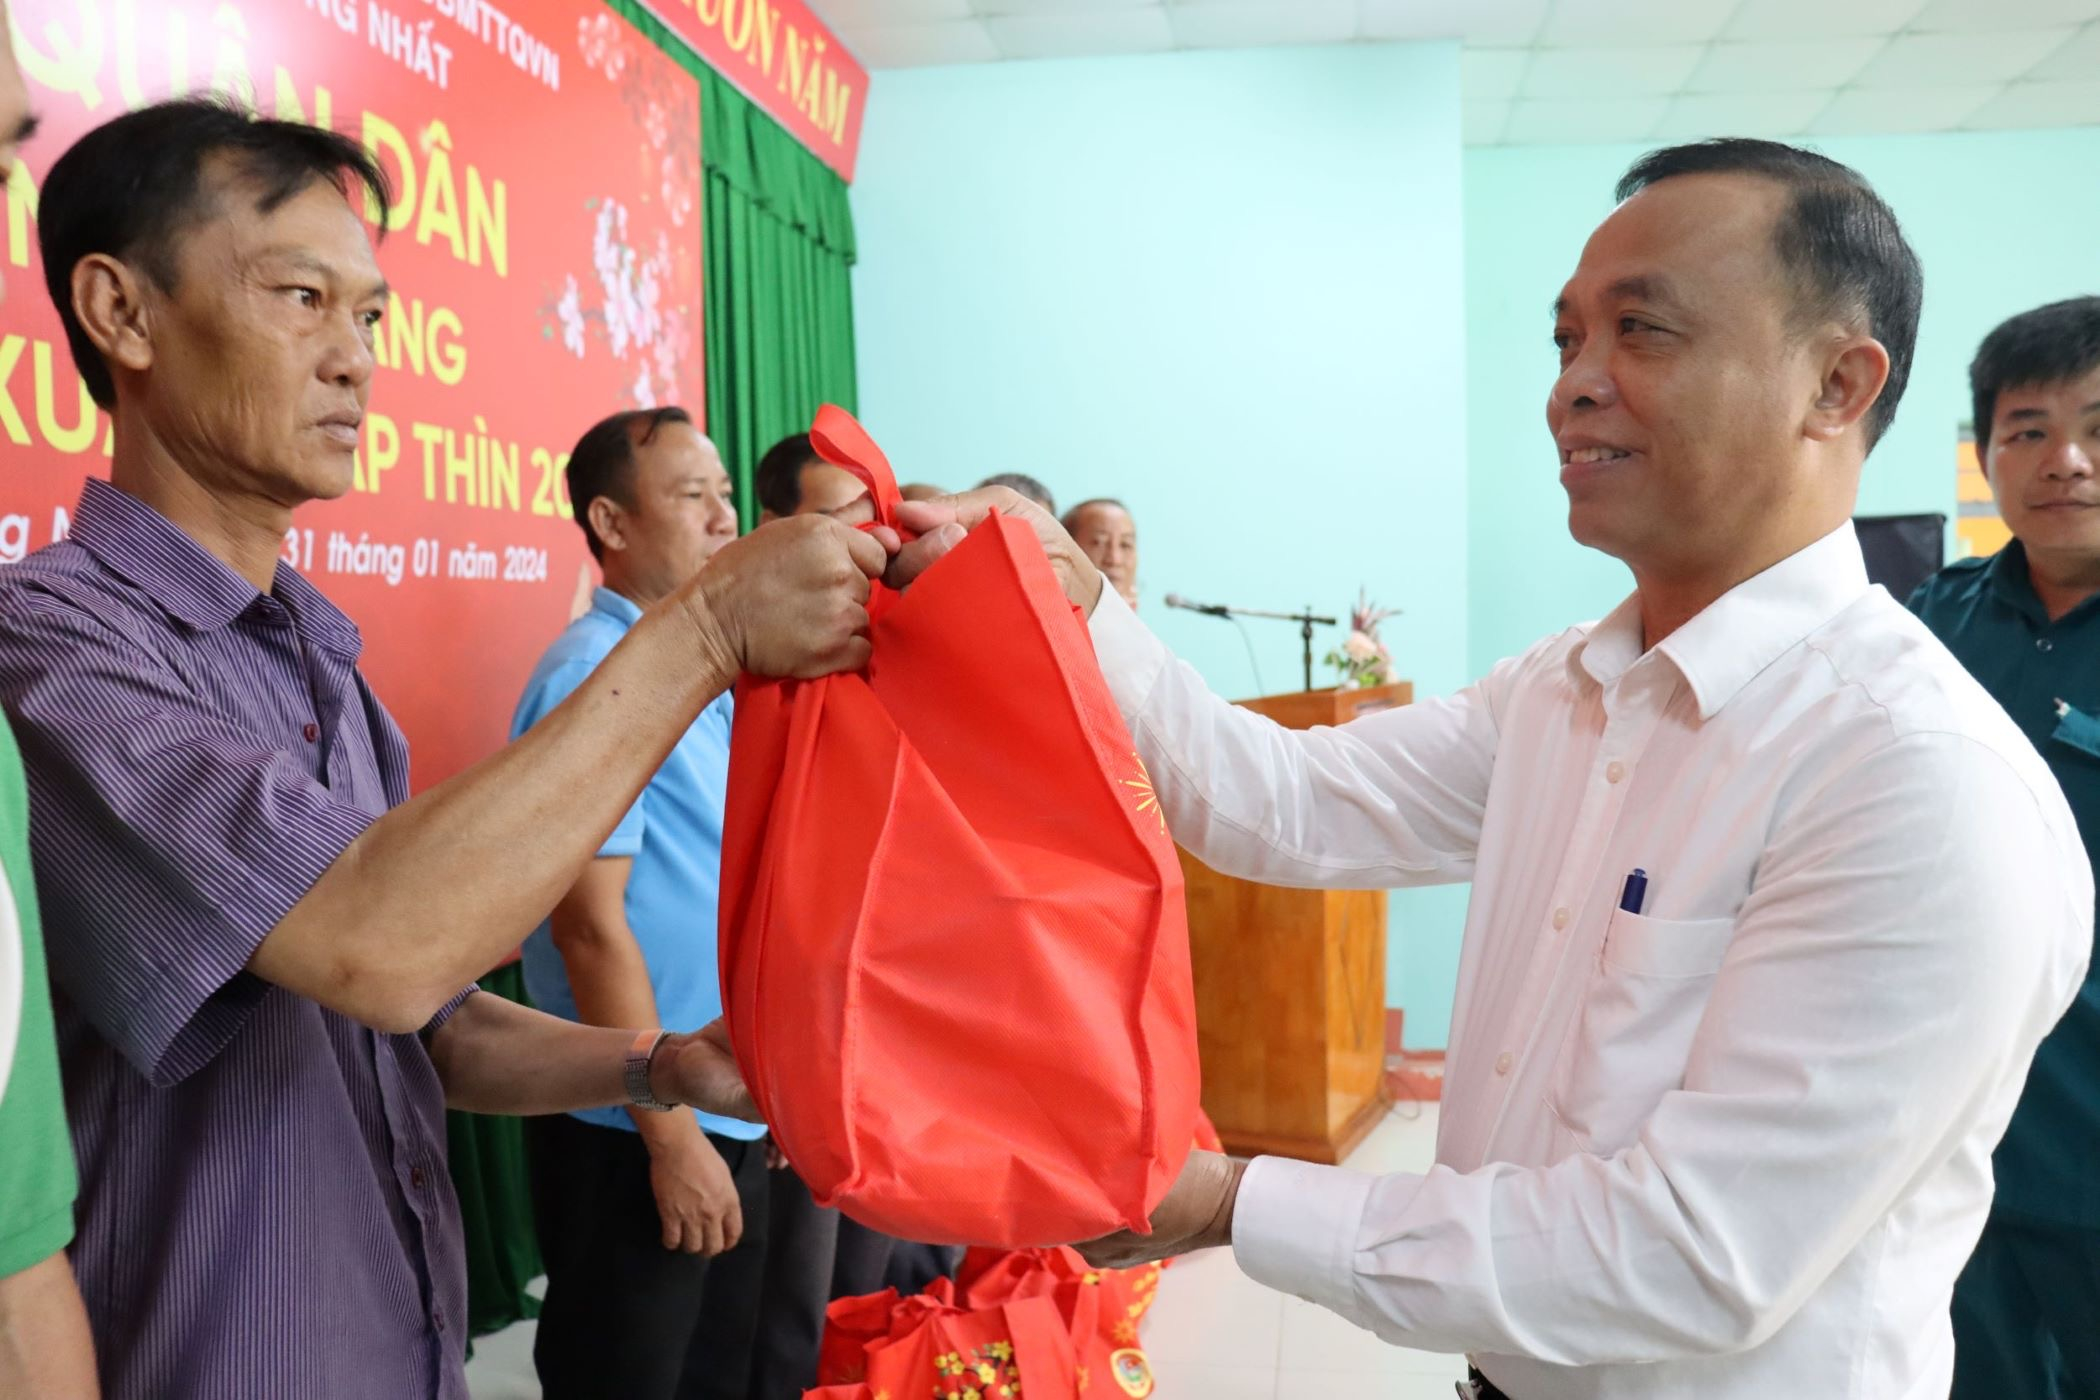 Phó bí thư thường trực Huyện ủy Thống Nhất Nguyễn Huy Du tặng quà chúc Tết người dân khó khăn trong chương trình.